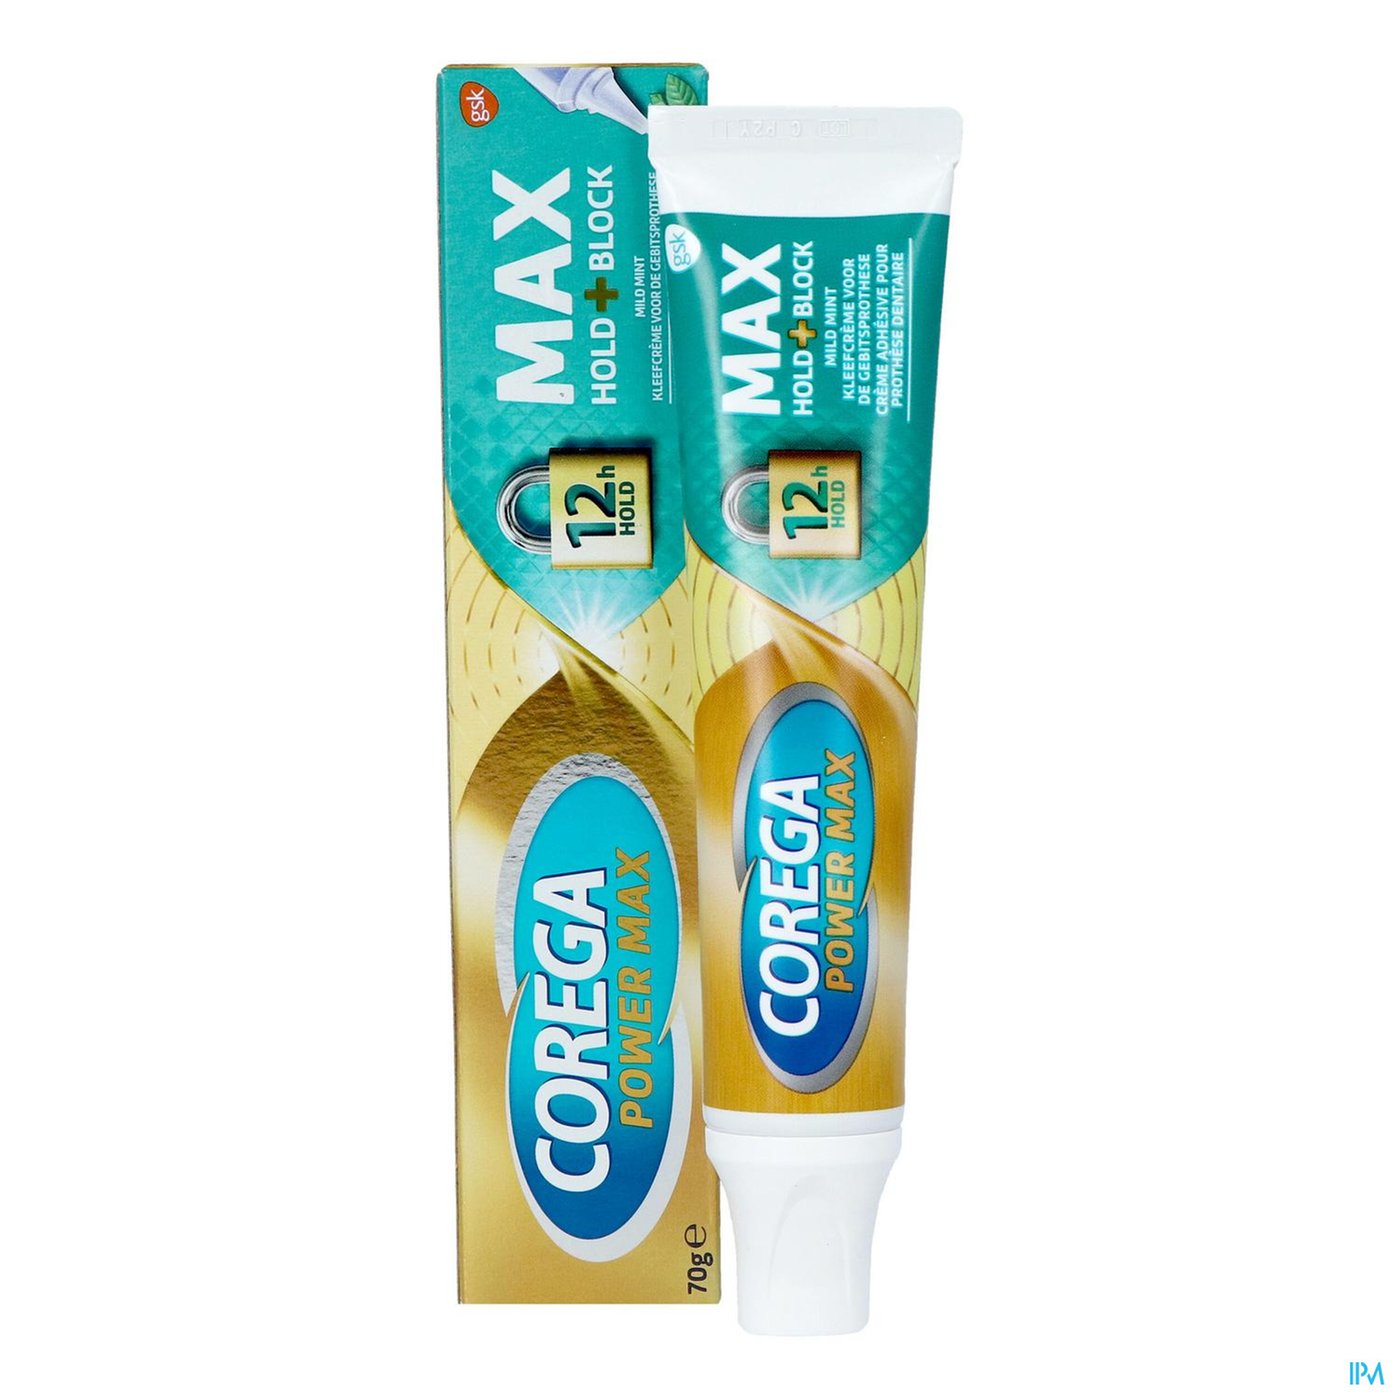 Corega Max Mint Tube 70g productshot